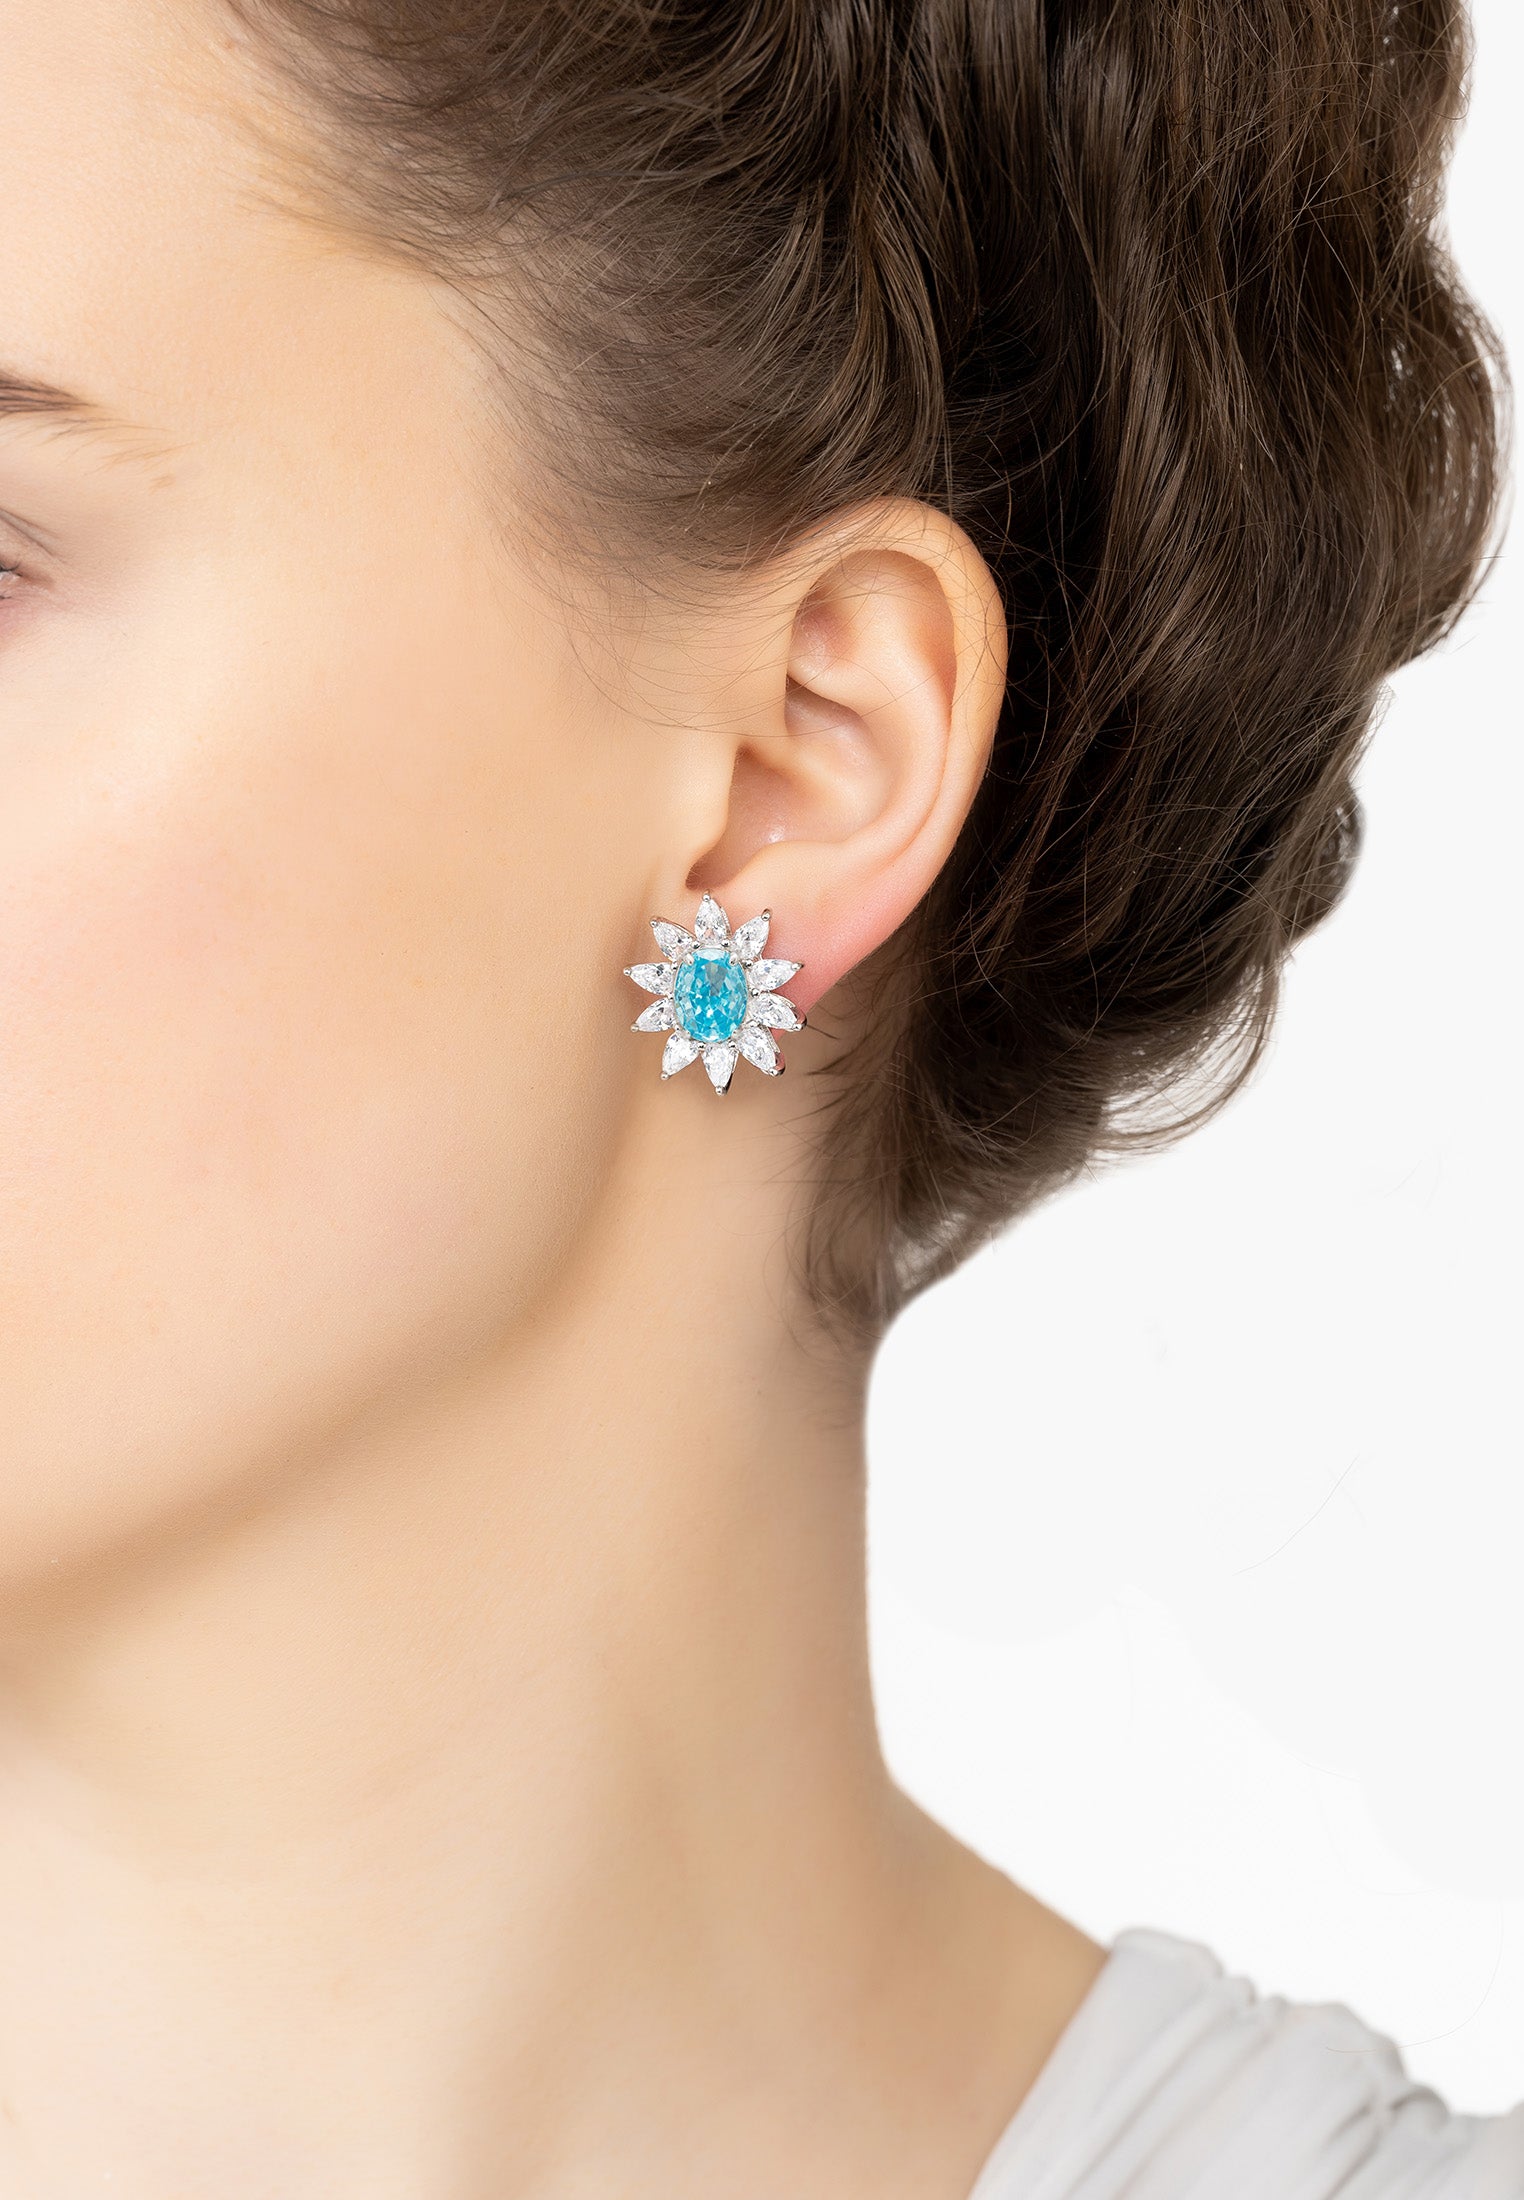 Daisy Gemstone Stud Earrings Blue Topaz Silver